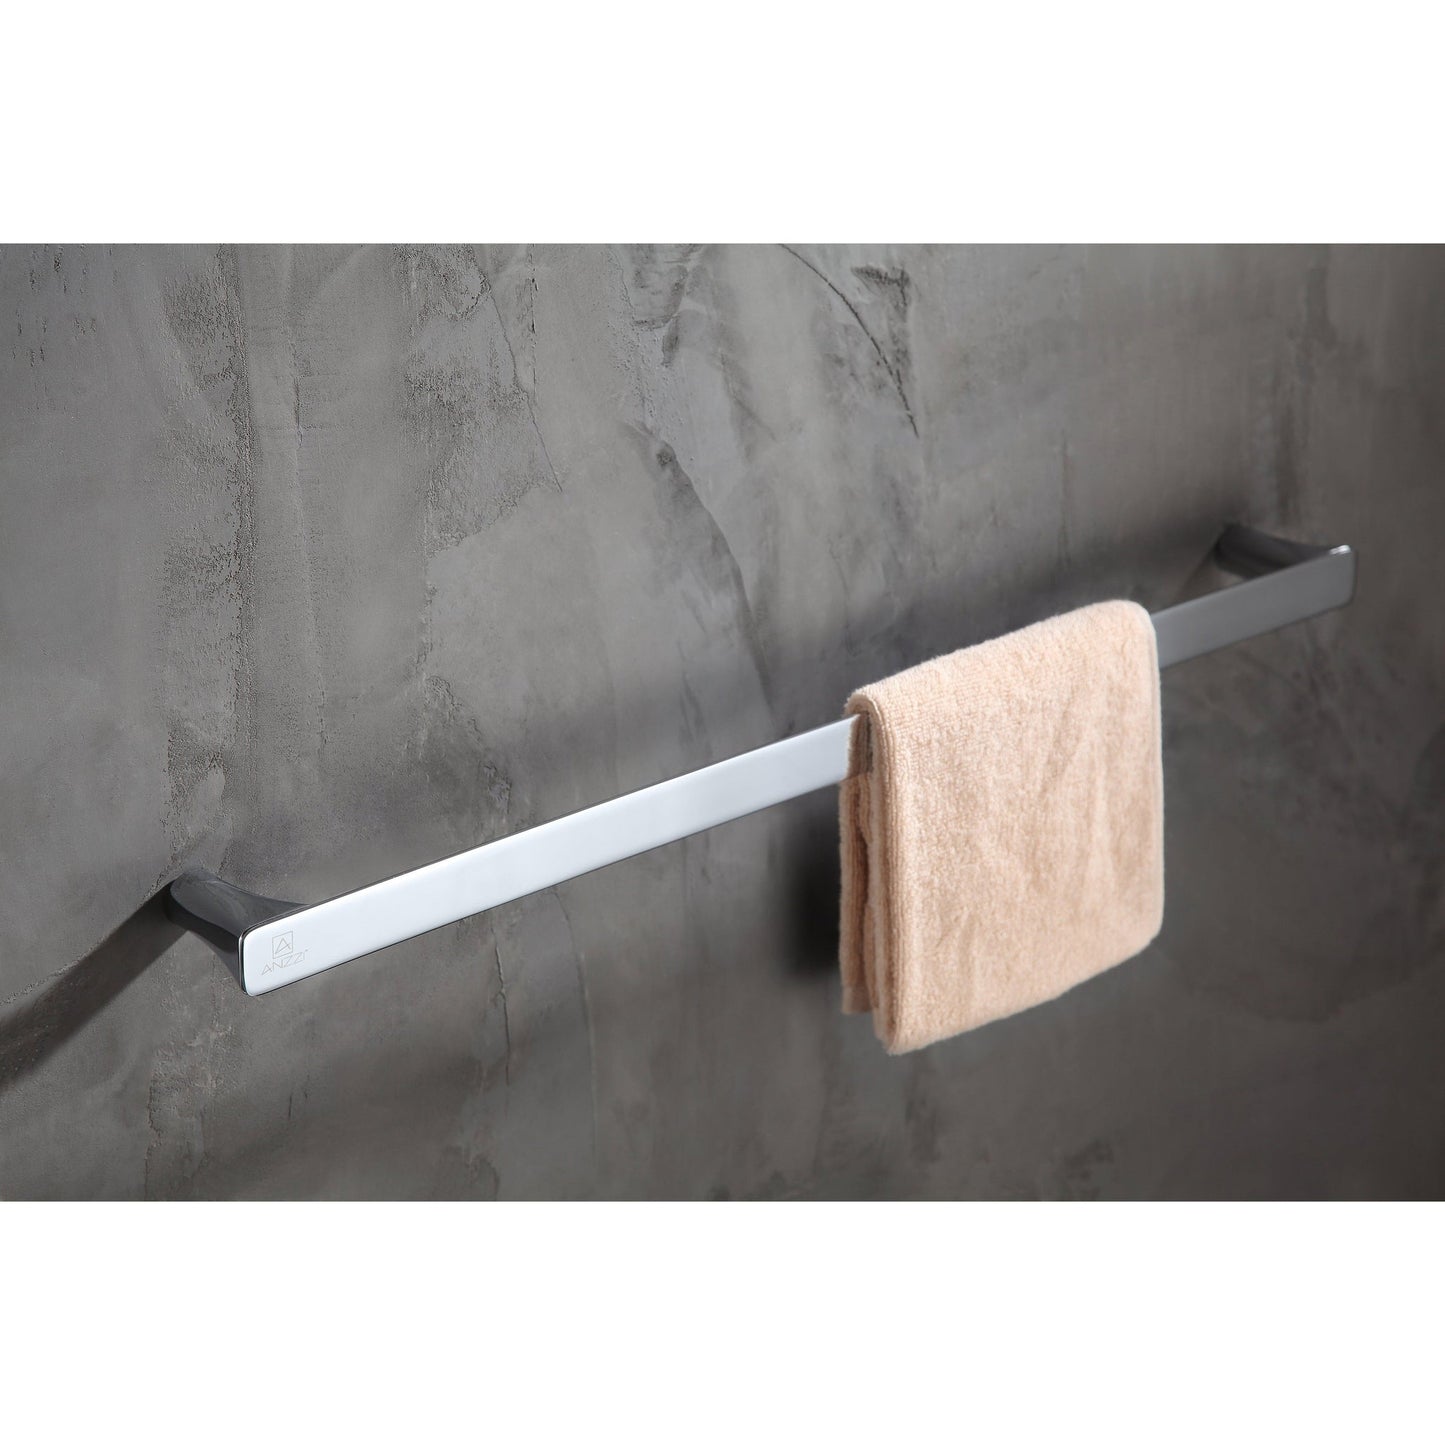 ANZZI Essence Series 25" Polished Chrome Wall-Mounted Single Towel Bar